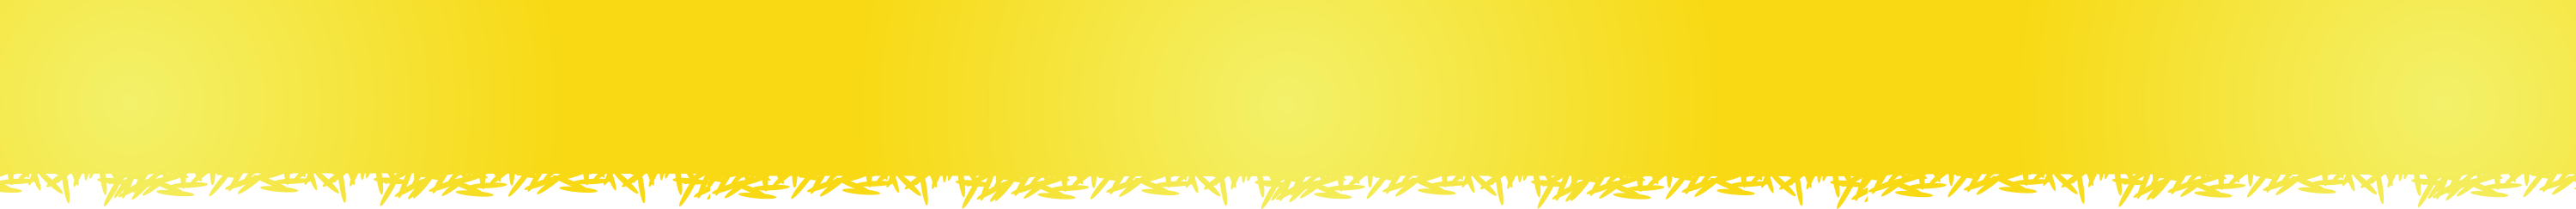 rice-yellow